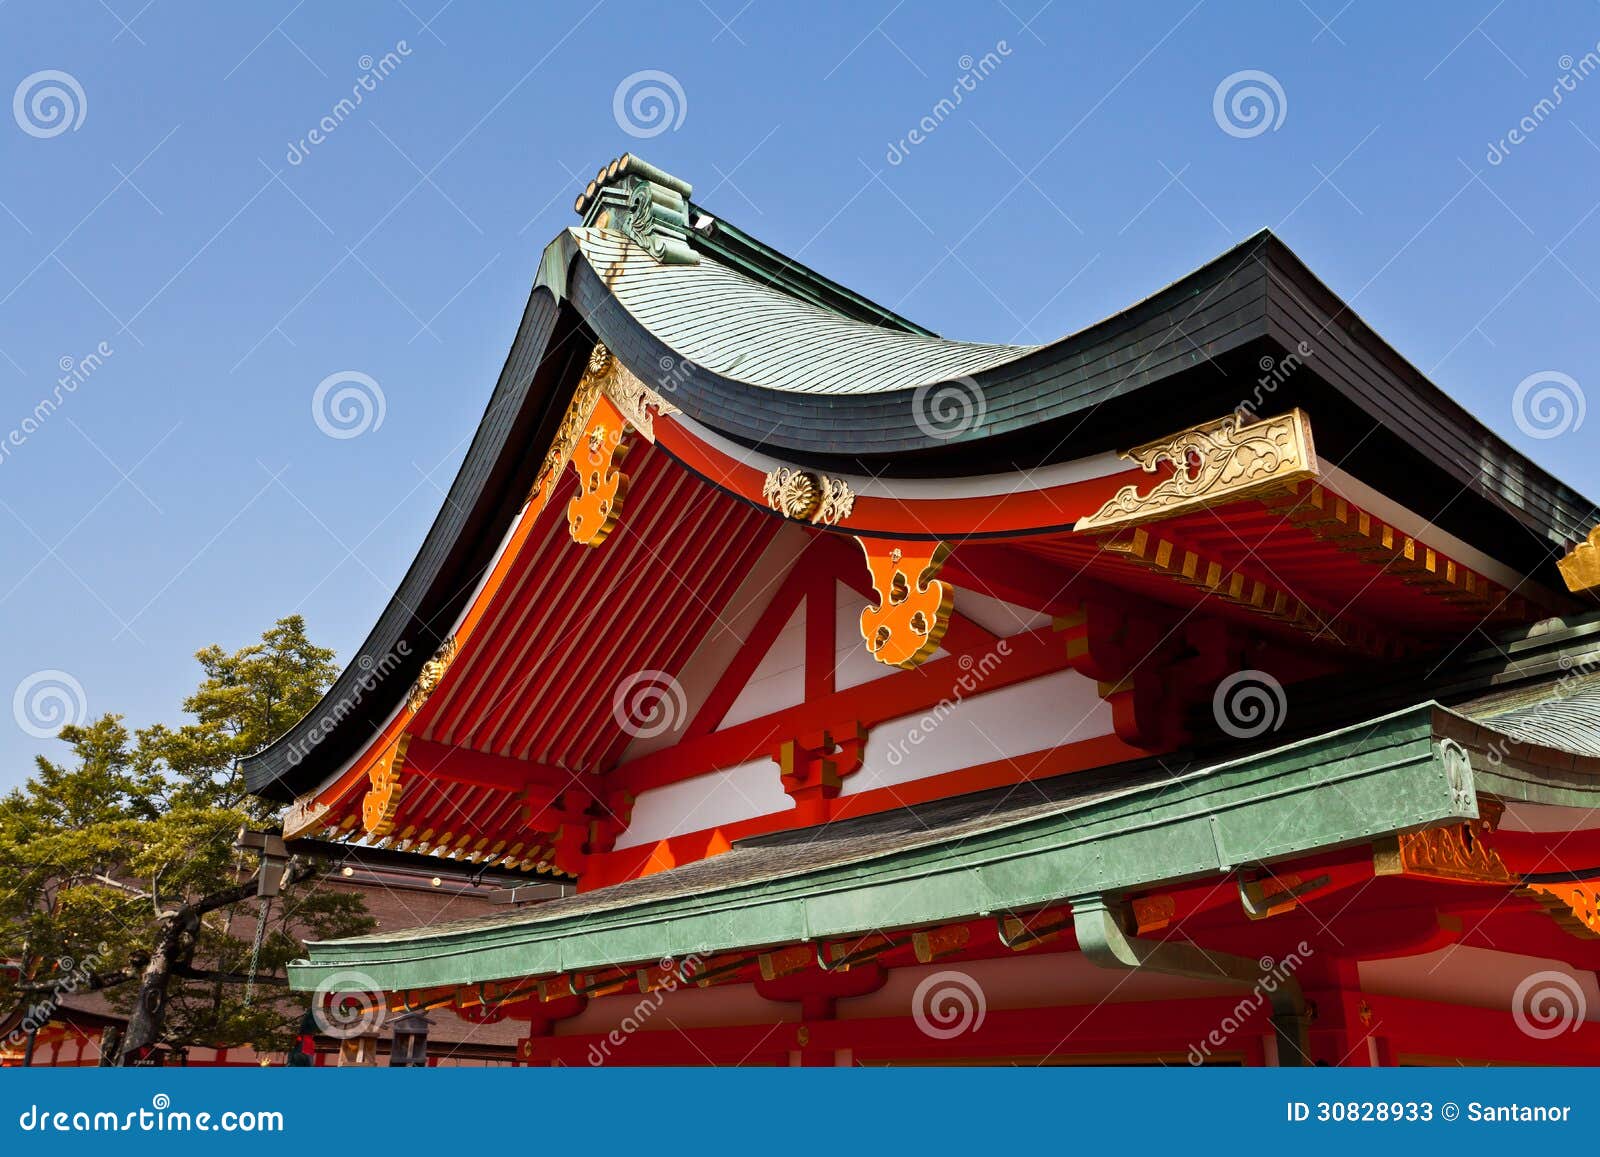 Dettaglio del tetto del santuario del giapponese. Santuario di Fushimi Inari Taisha a Kyoto, Giappone. Santuario shintoista famoso.